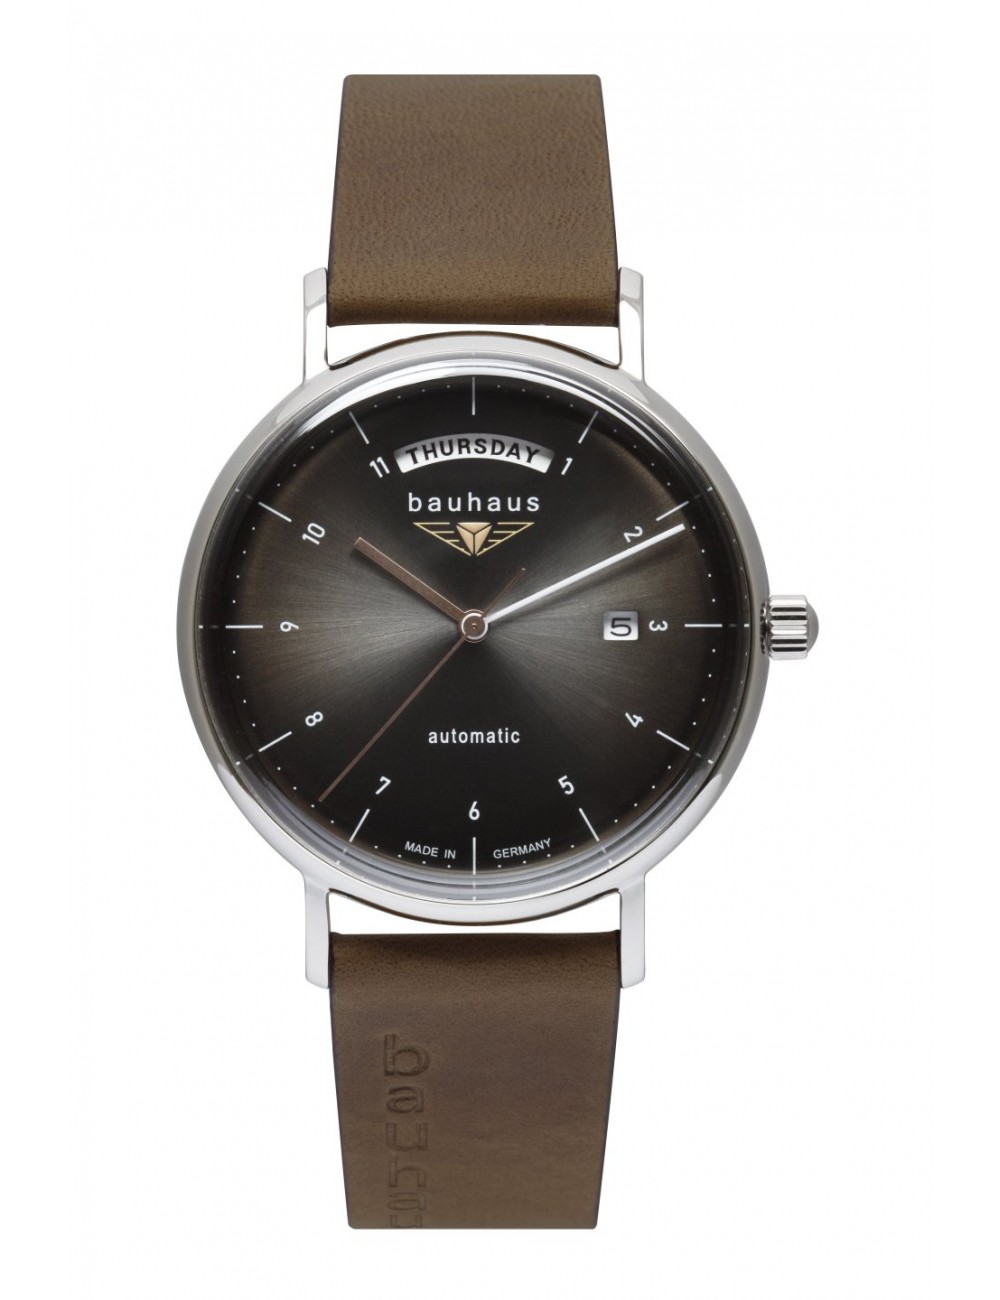 Reloj alemán Bauhaus automático day date